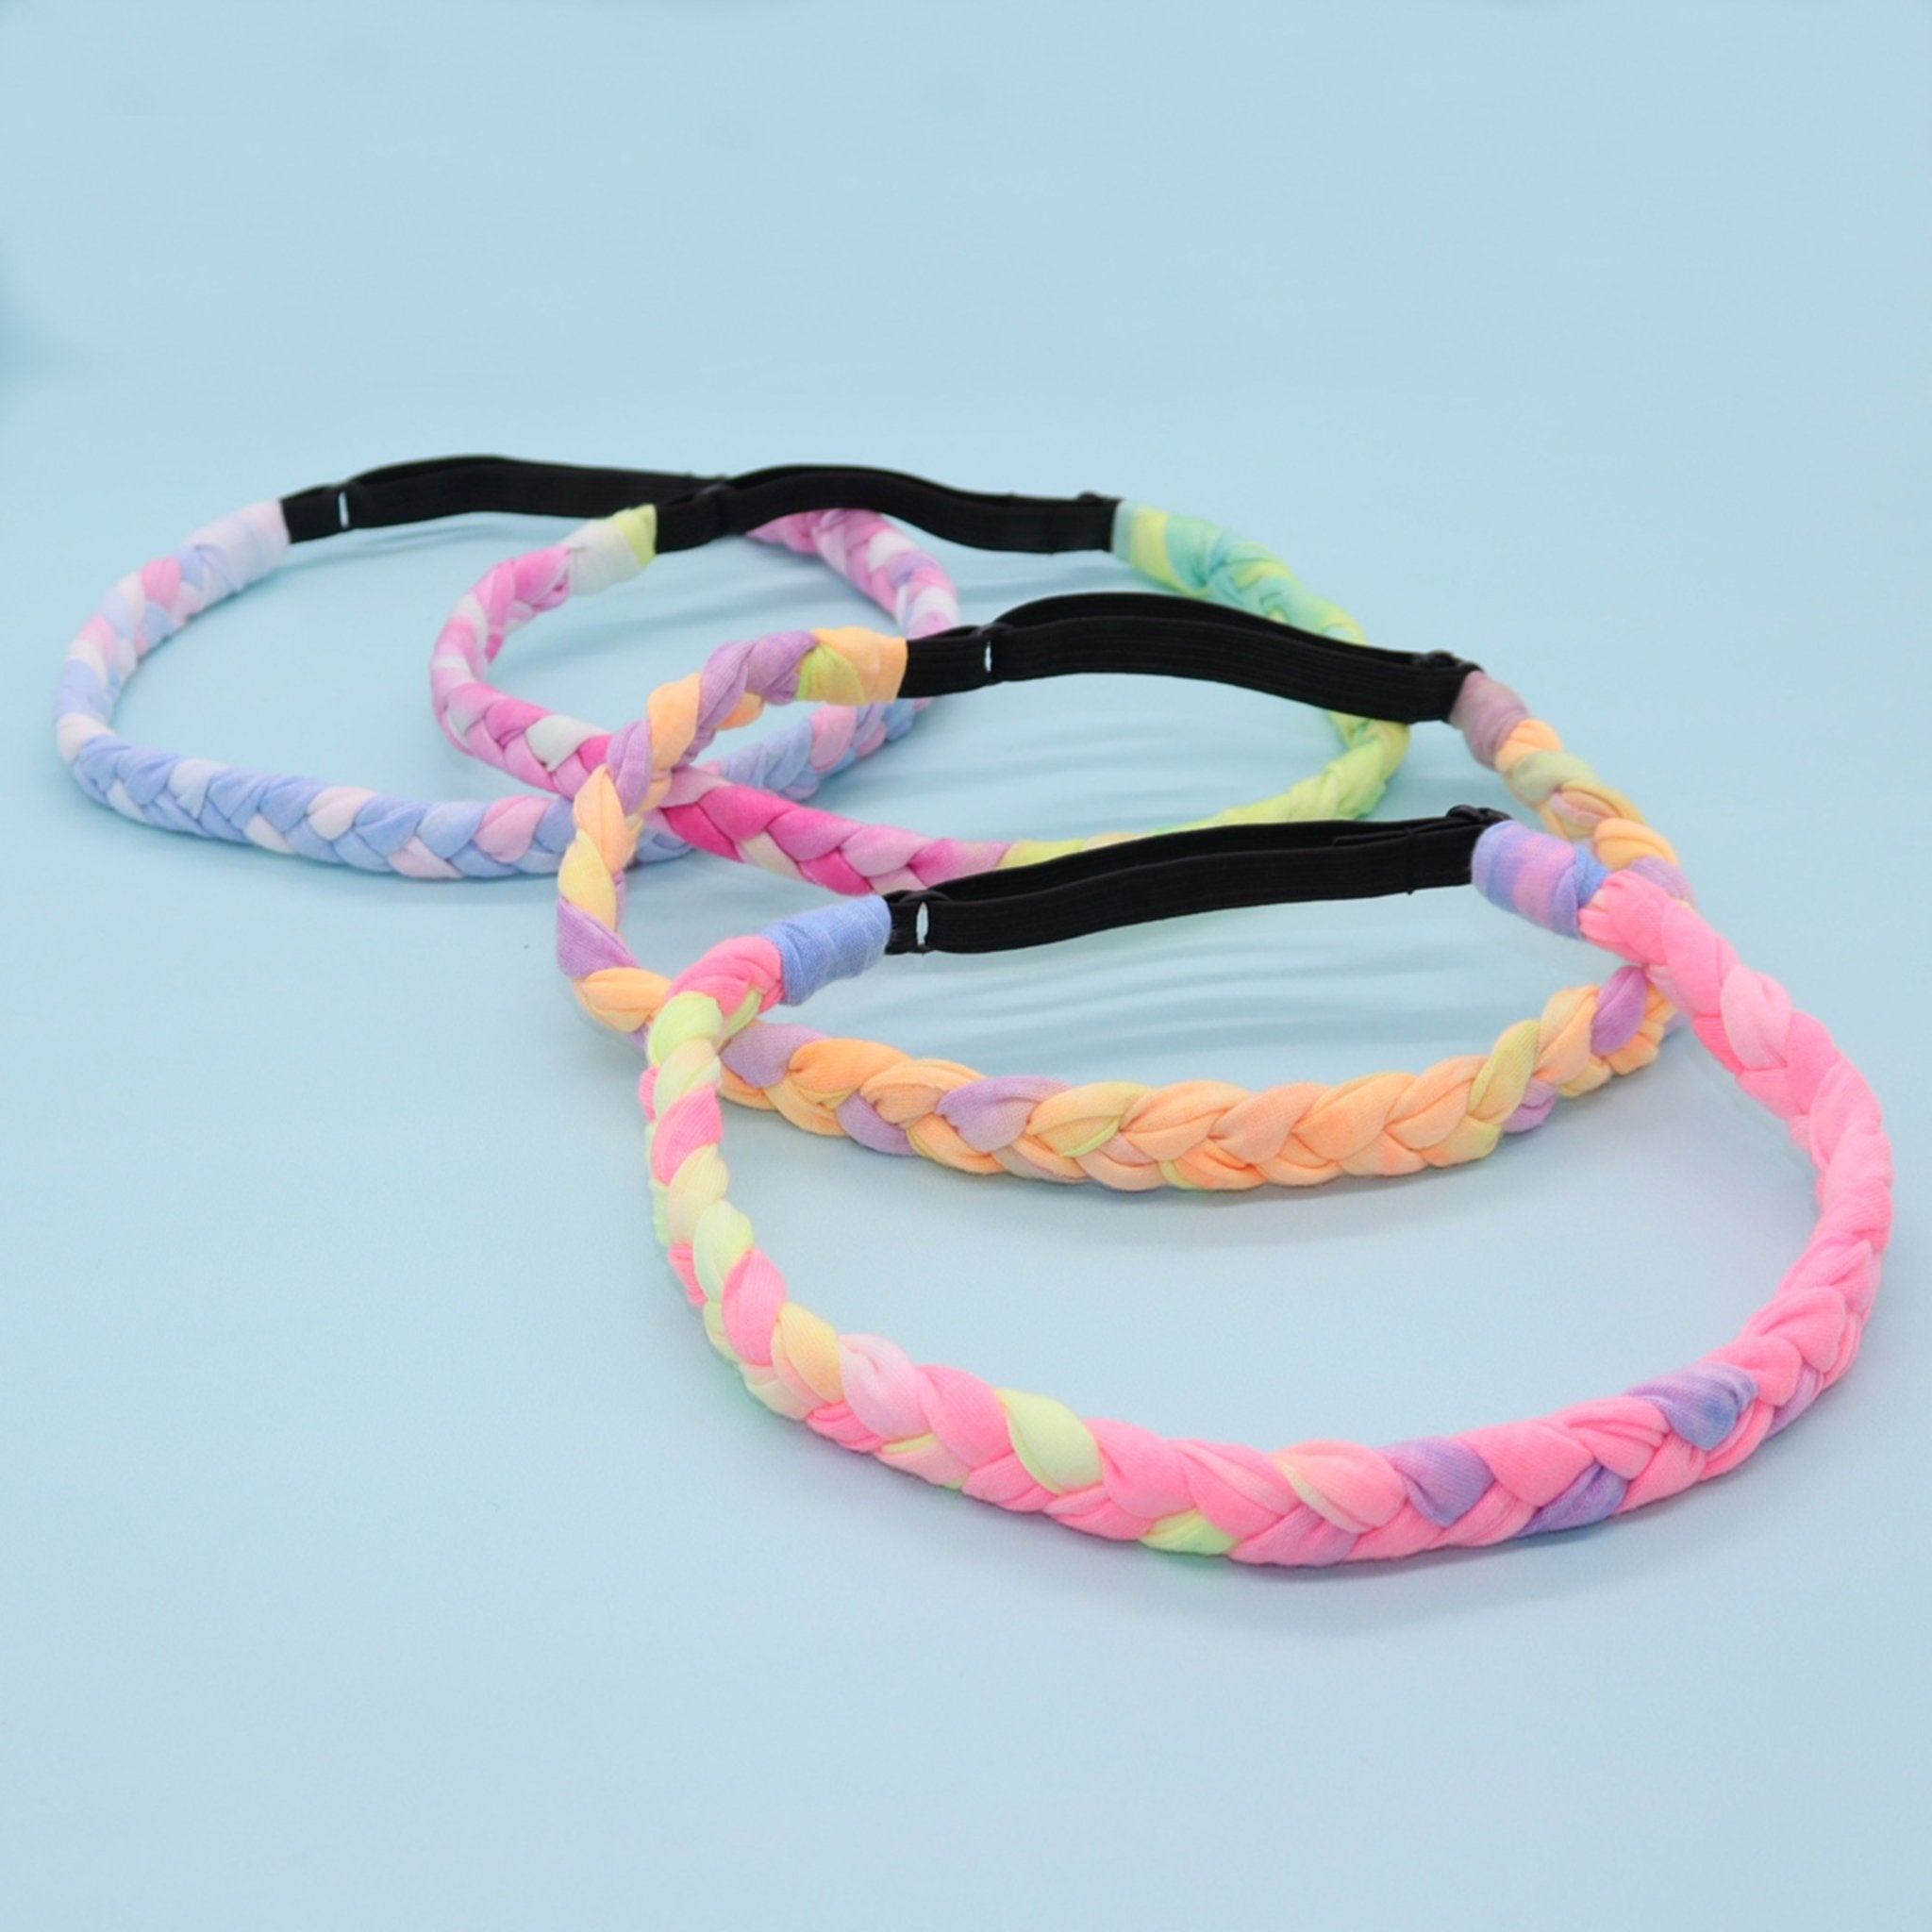 Adjustable Braided Headbands - Tie Dye 4 Pack - FROG SAC